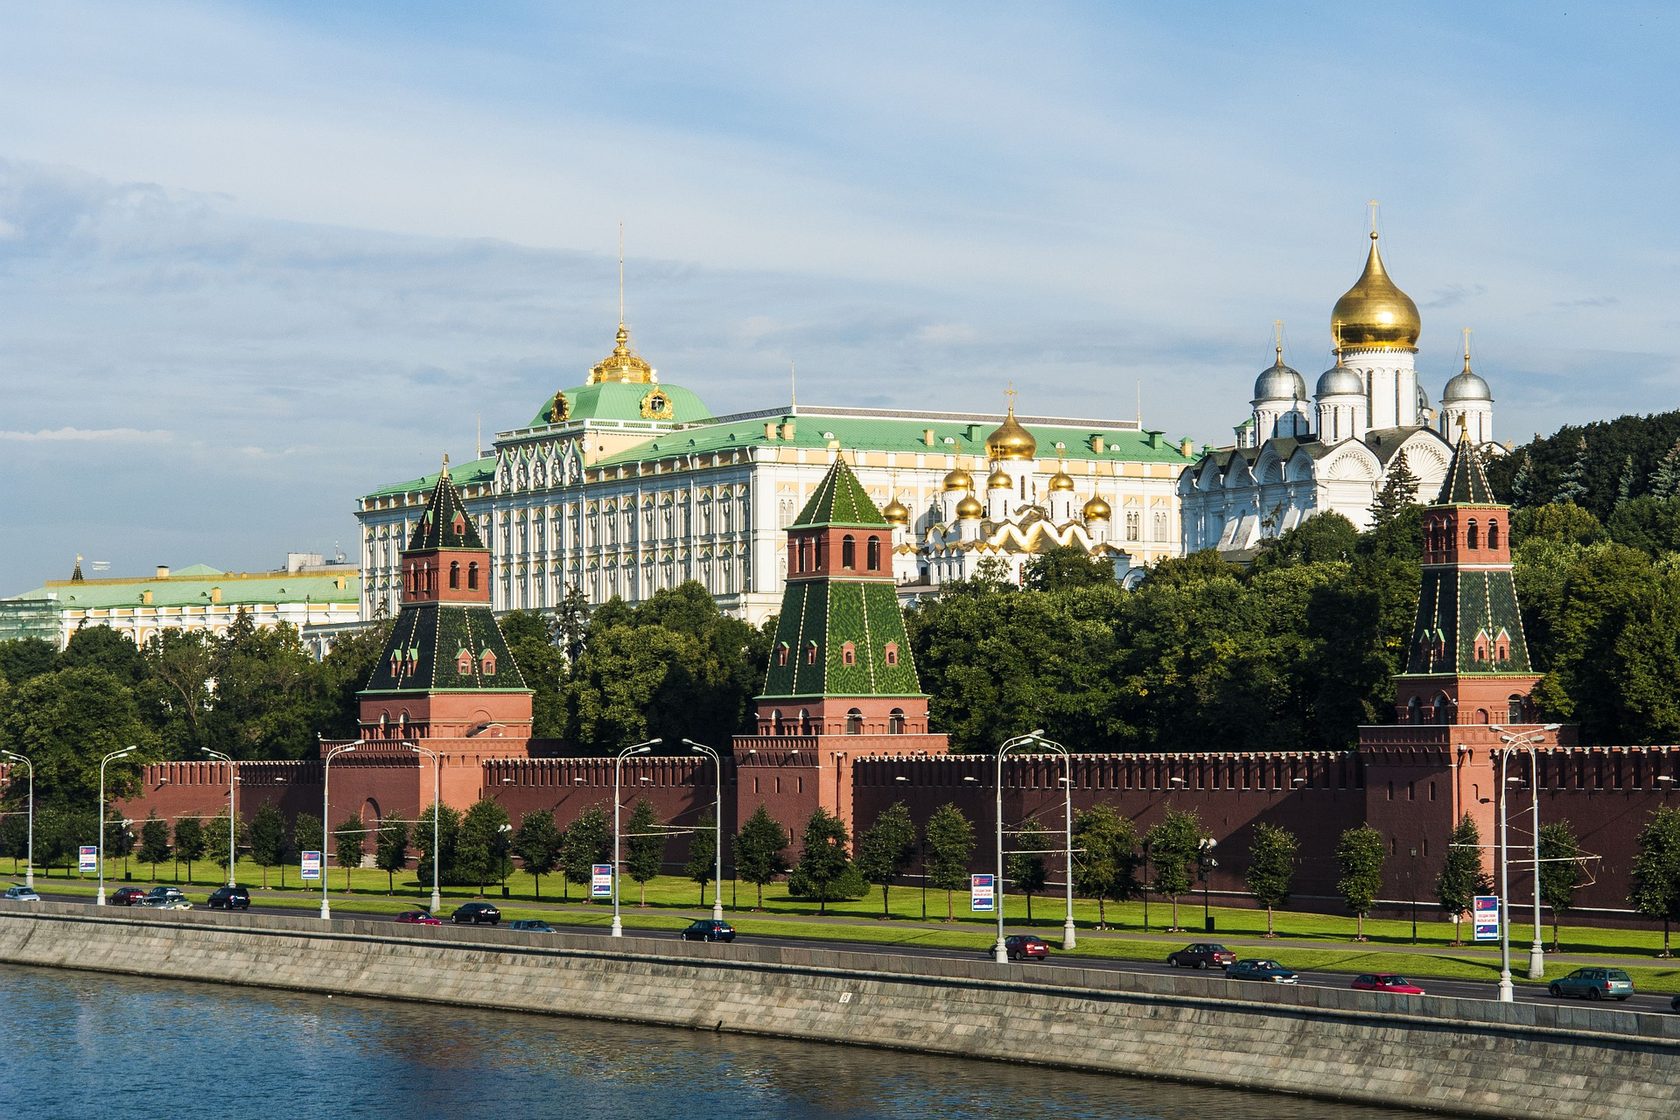 Московский кремль имеет двадцать